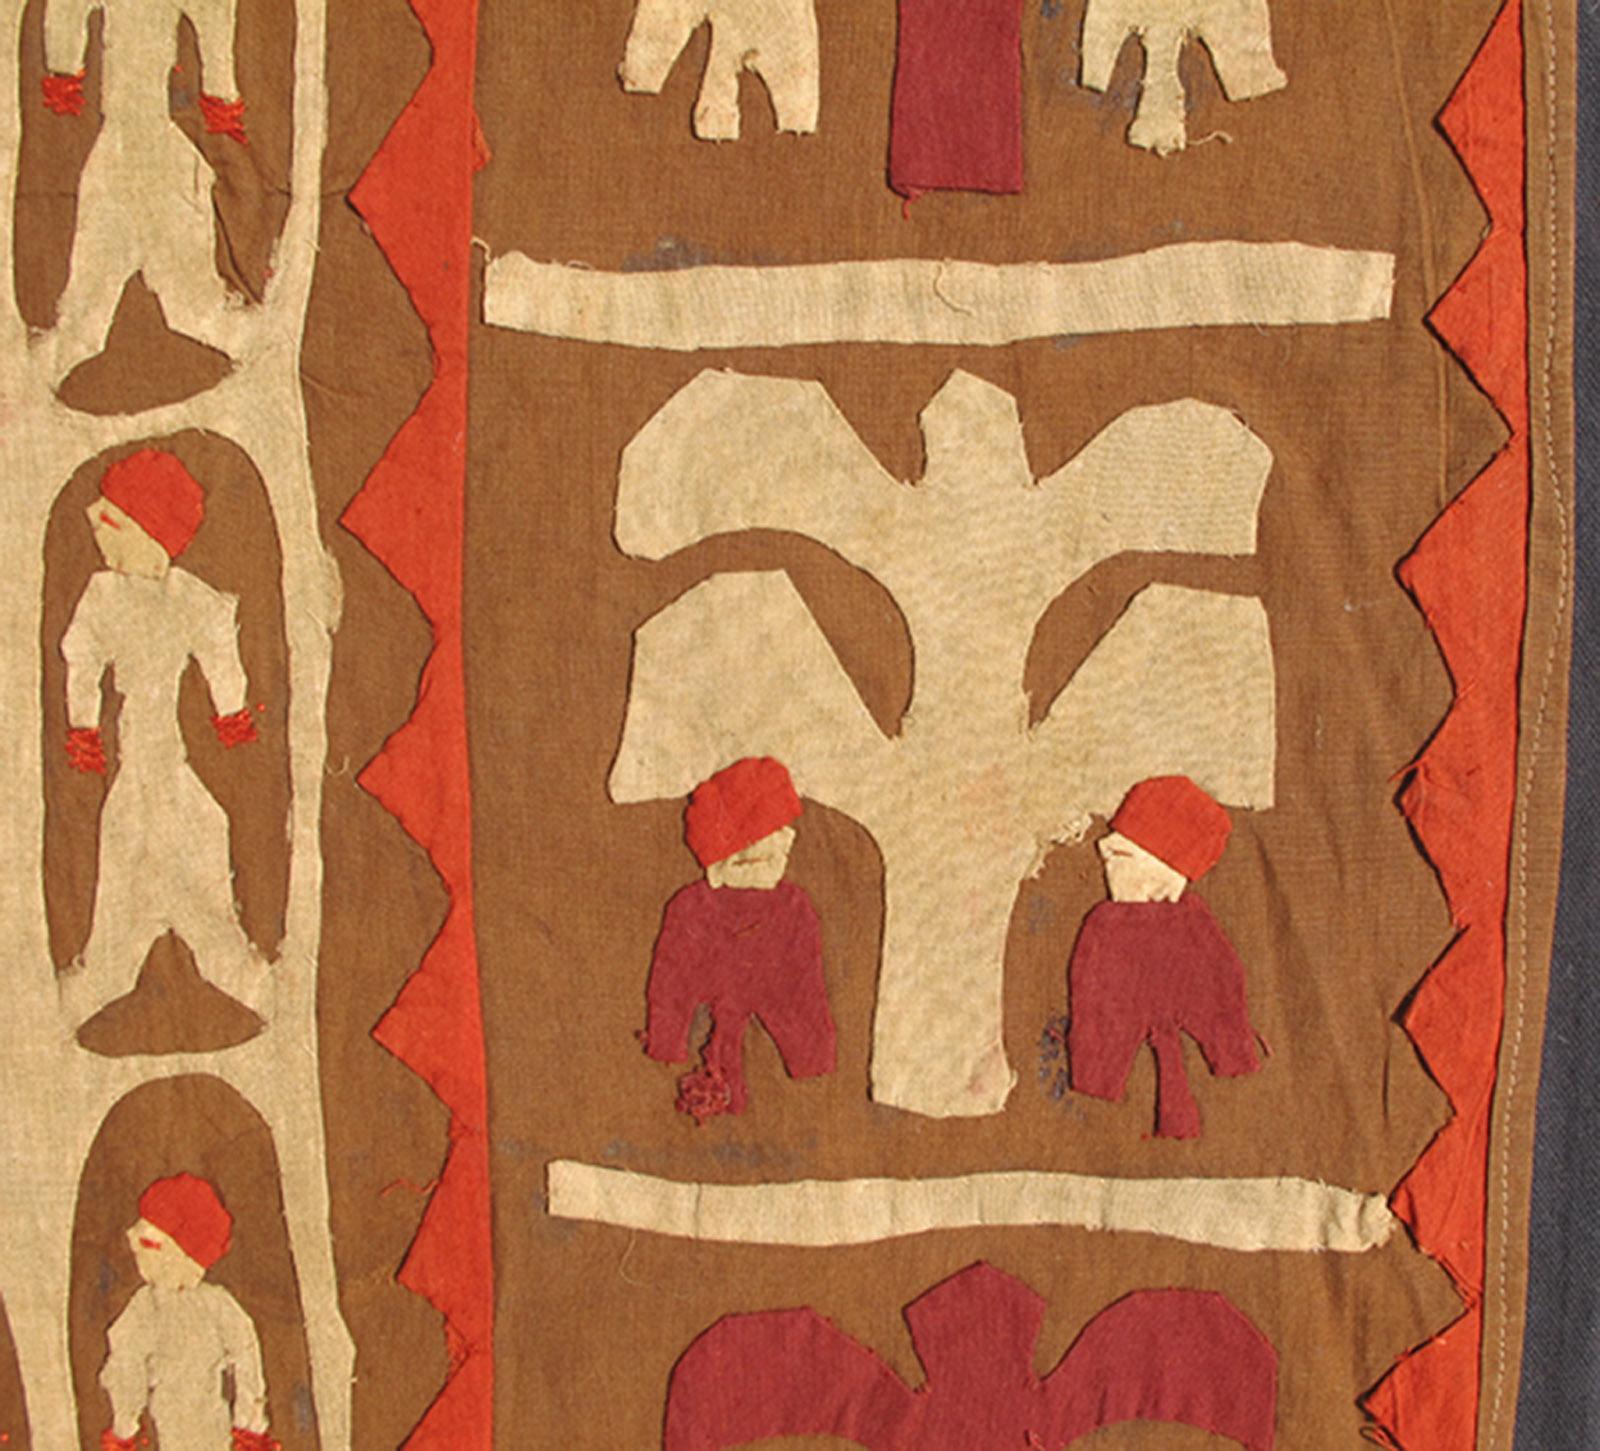 Tapis africain avec dessin géométrique rendu en motifs tribaux, animaux, personnes à cheval, tapis S12-0606, pays d'origine / type : Maroc / Tribal, circa 1920.

Fabriqué au début du XXe siècle, ce magnifique textile africain ancien présente un